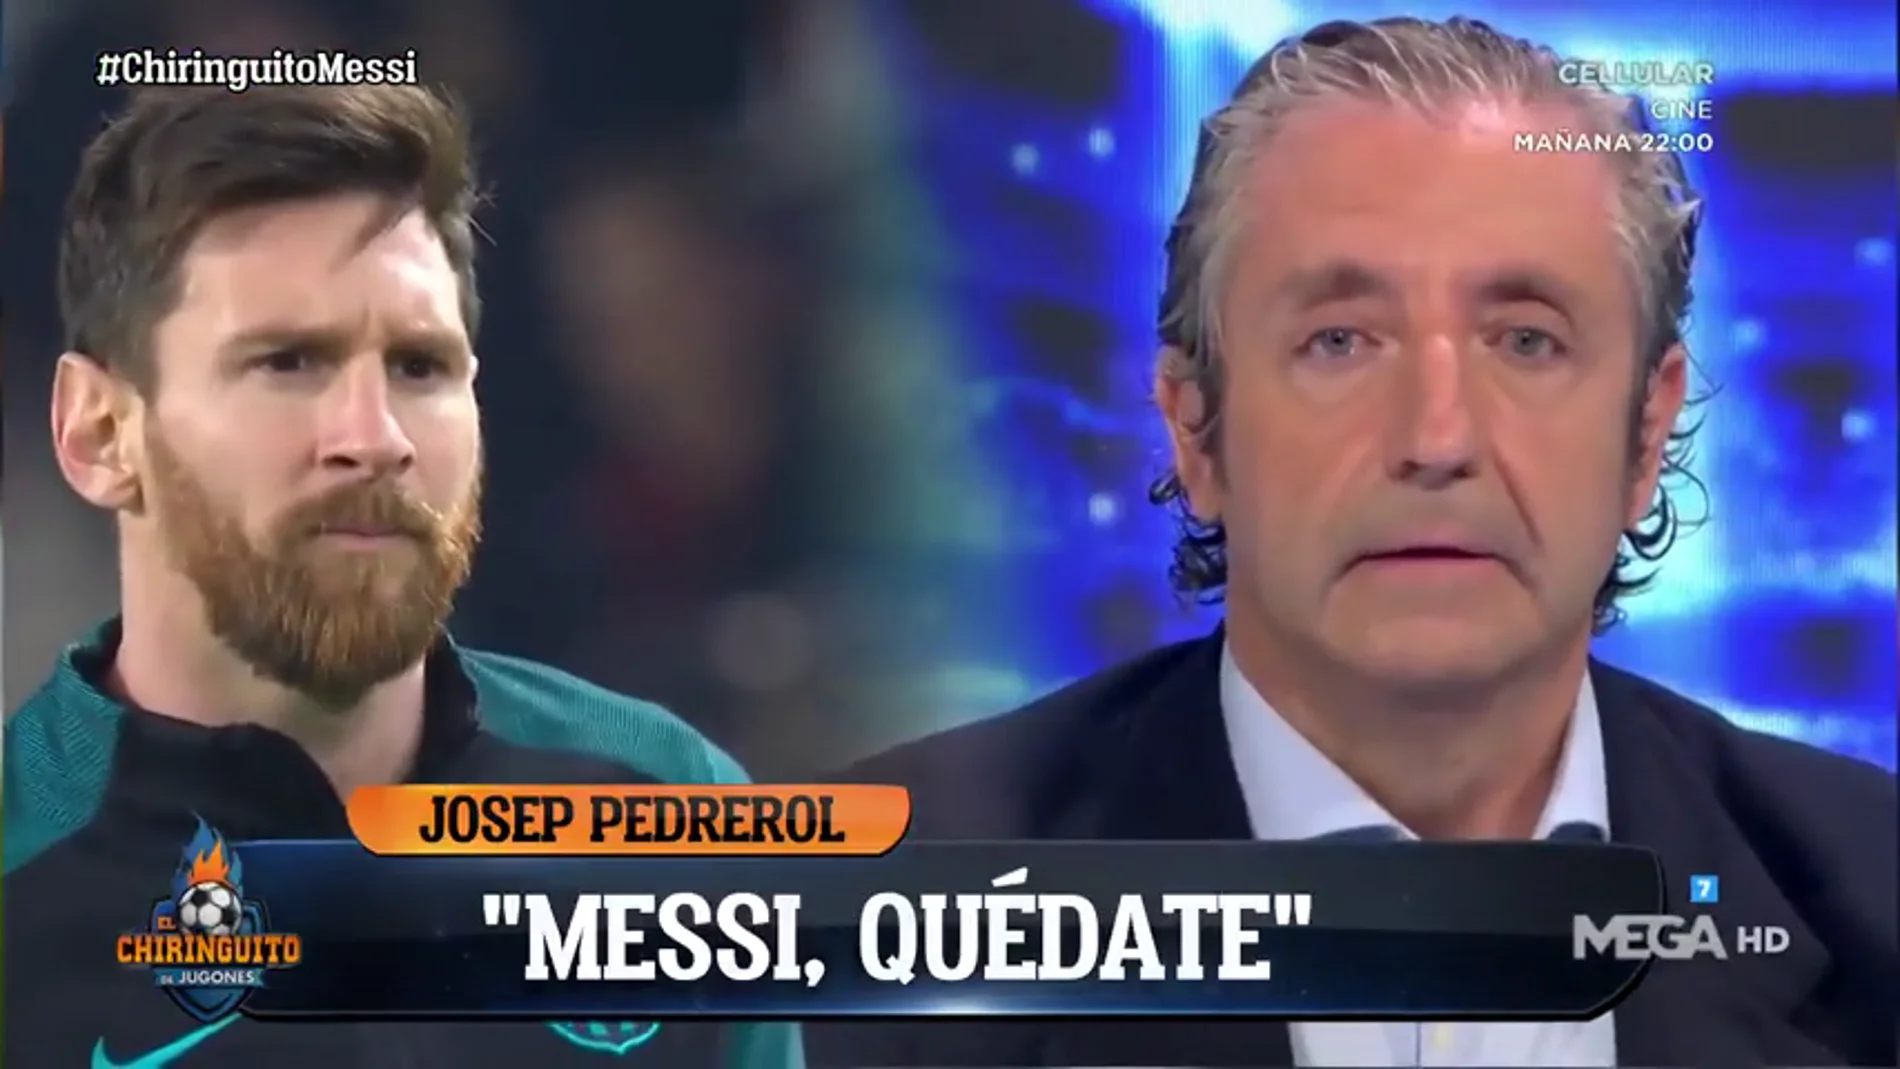 El mensaje de Pedrerol a Leo Messi tras comunicar su intención de irse del Barça: "Messi, quédate"